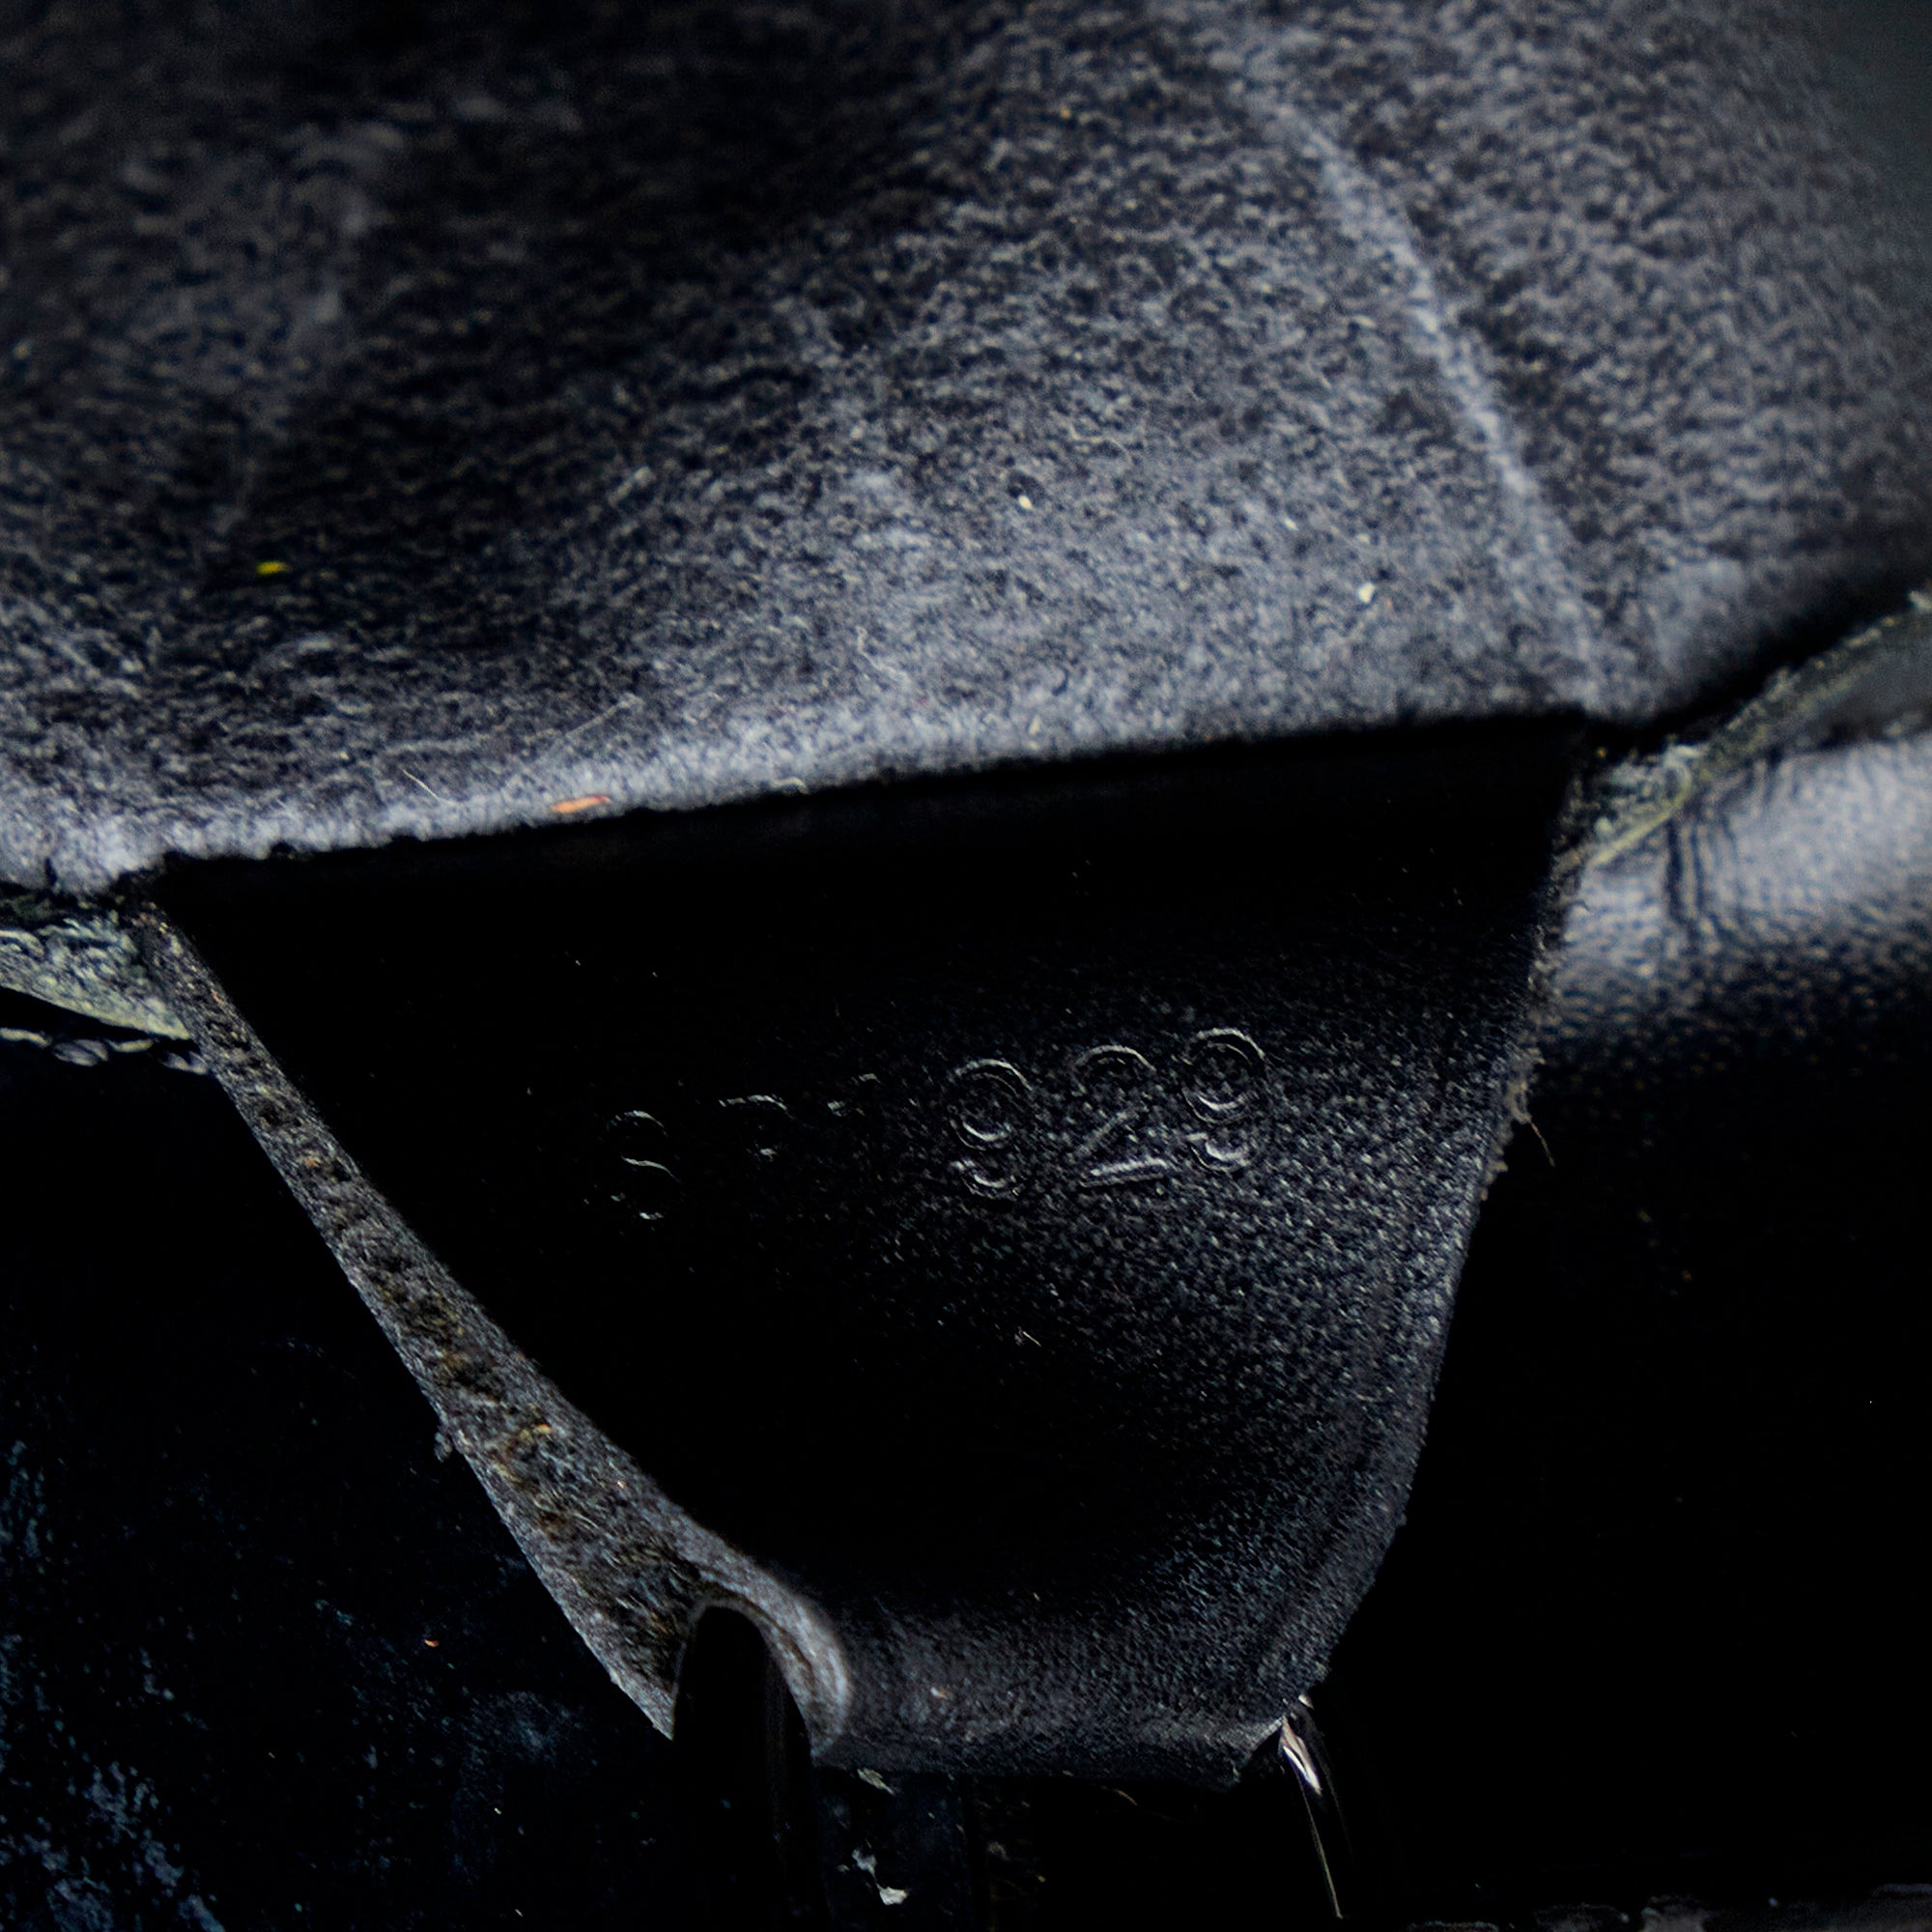 Louis Vuitton Louis Vuitton Verseau Black Epi Leather Shoulder Bag